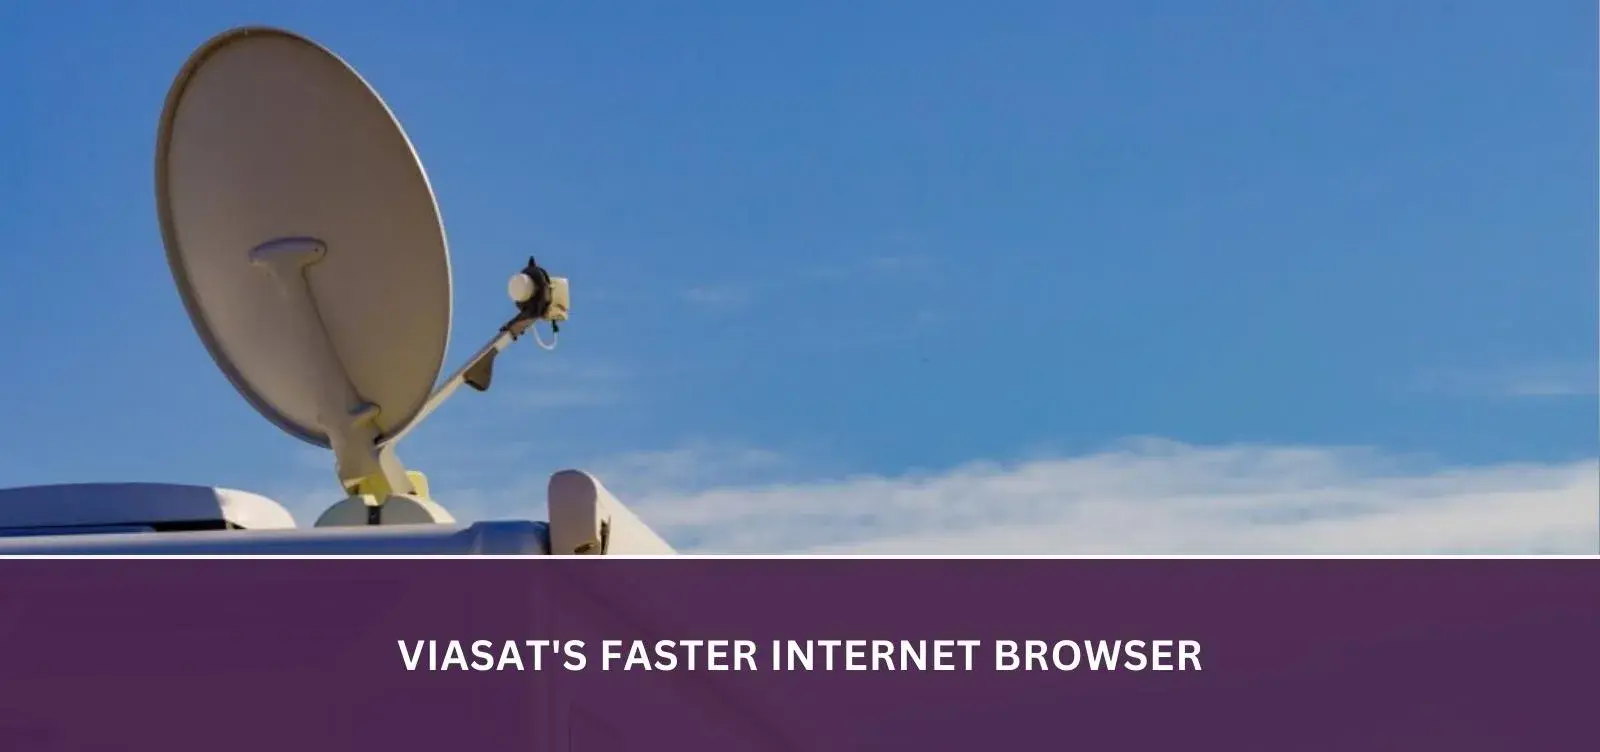 Viasat's Faster Internet Browser